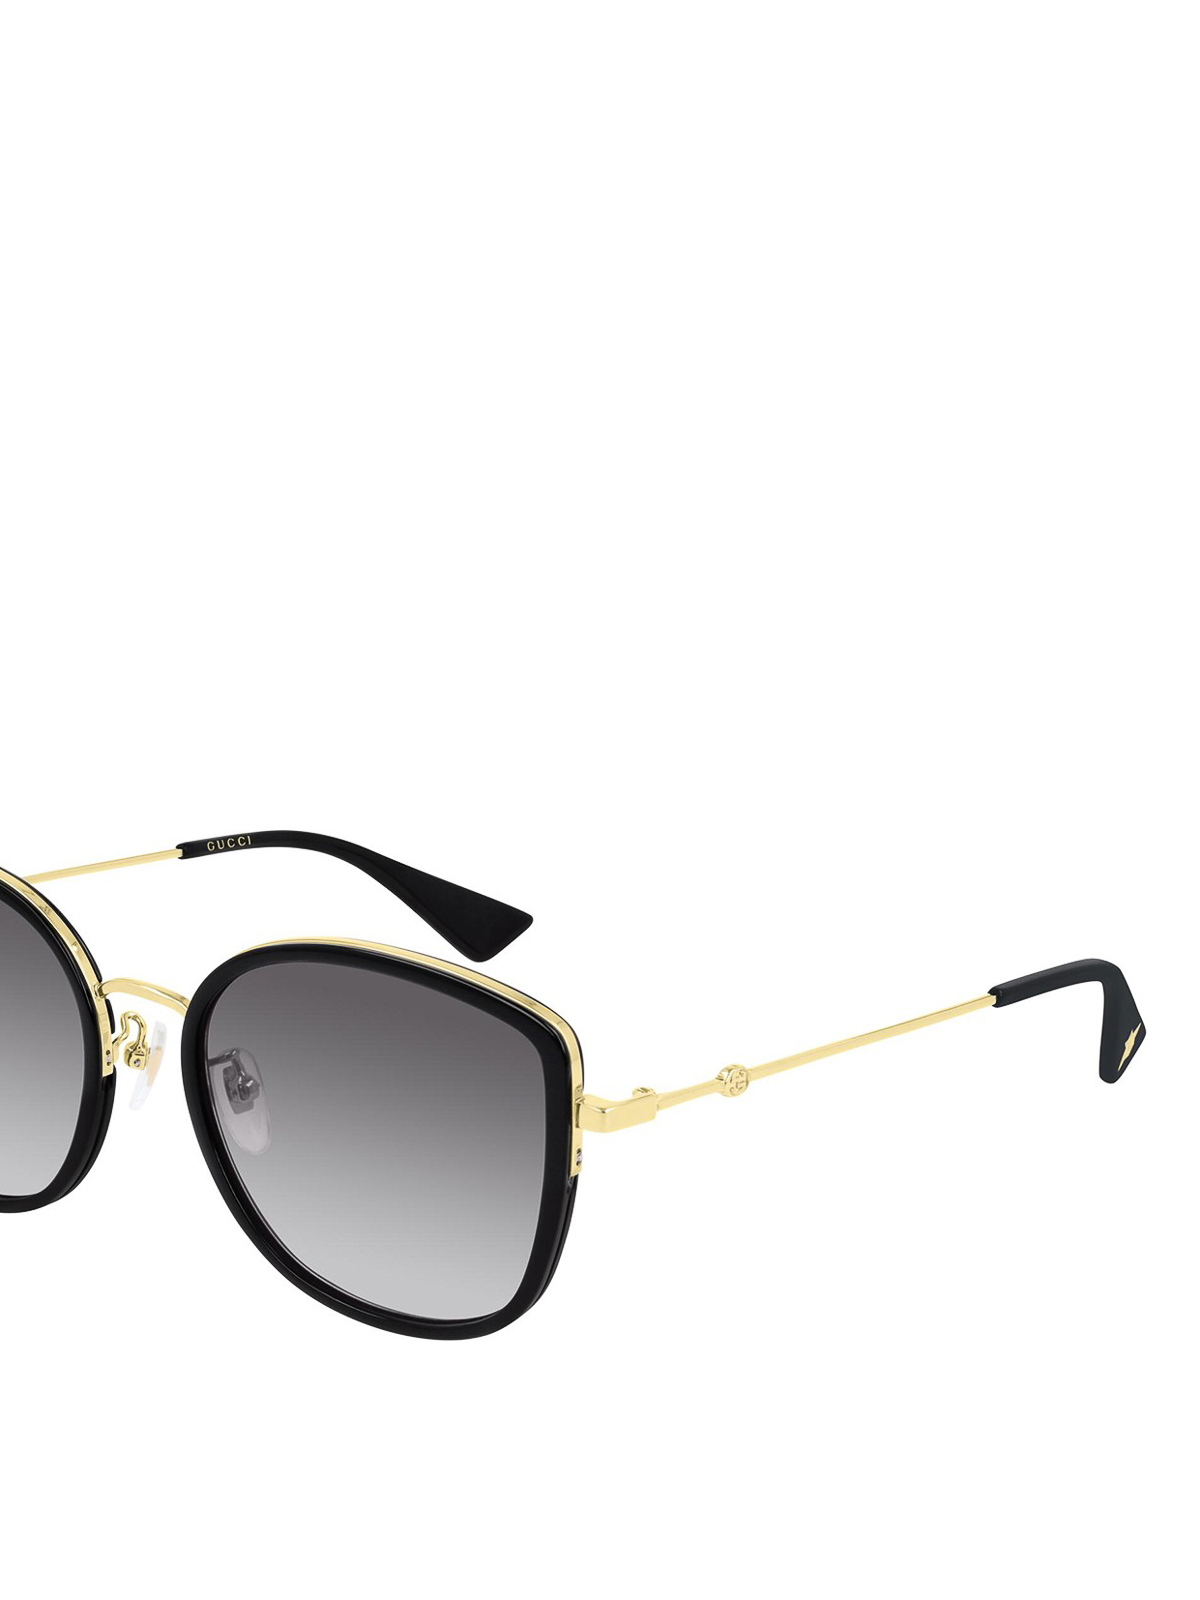 black and gold gucci sunglasses